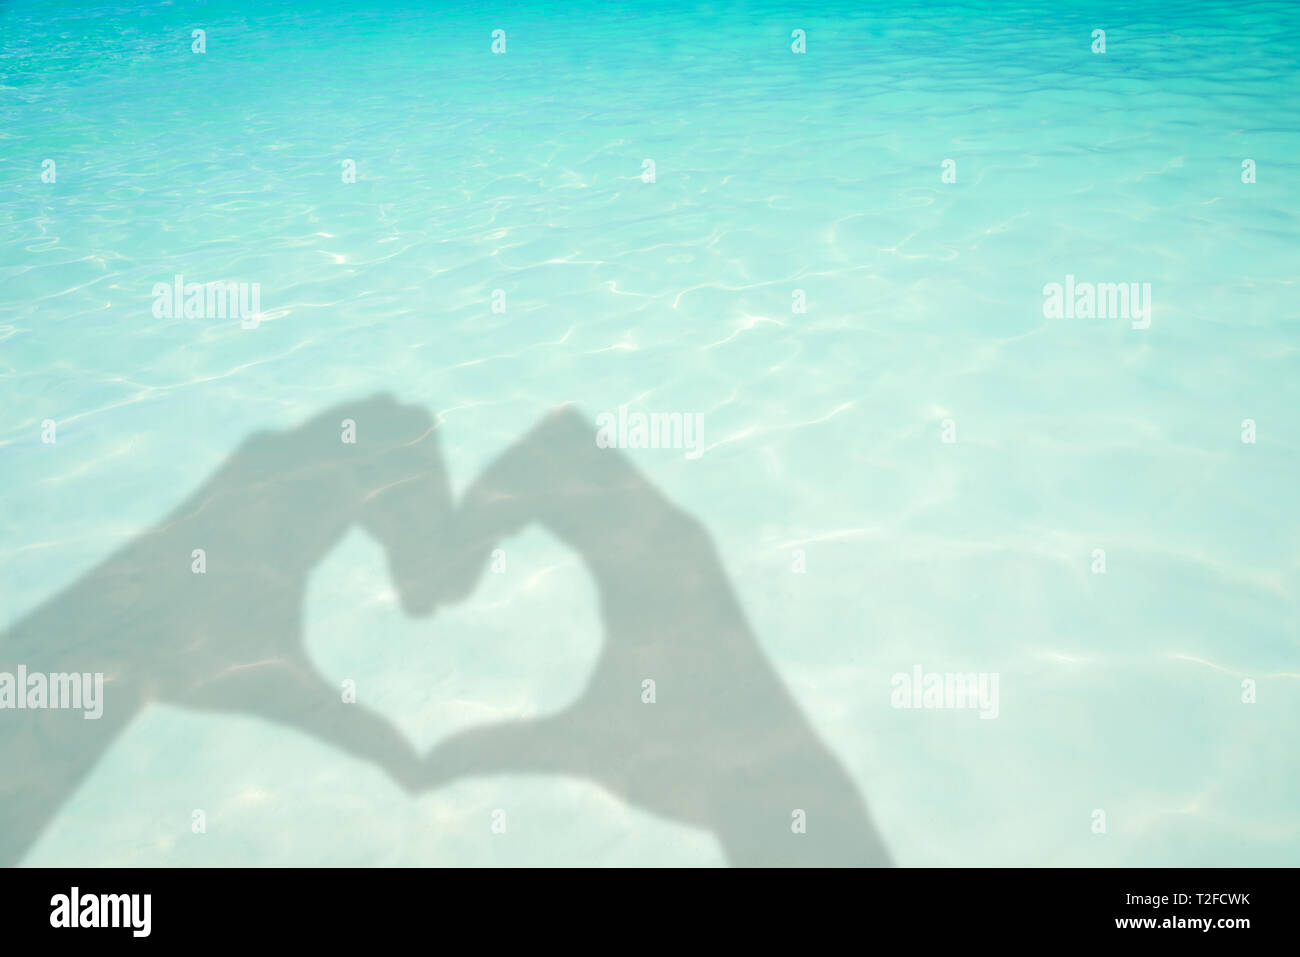 Schatten der Hände bilden ein Herz auf Türkis transluzent Wasser Meer Hintergrund Stockfoto